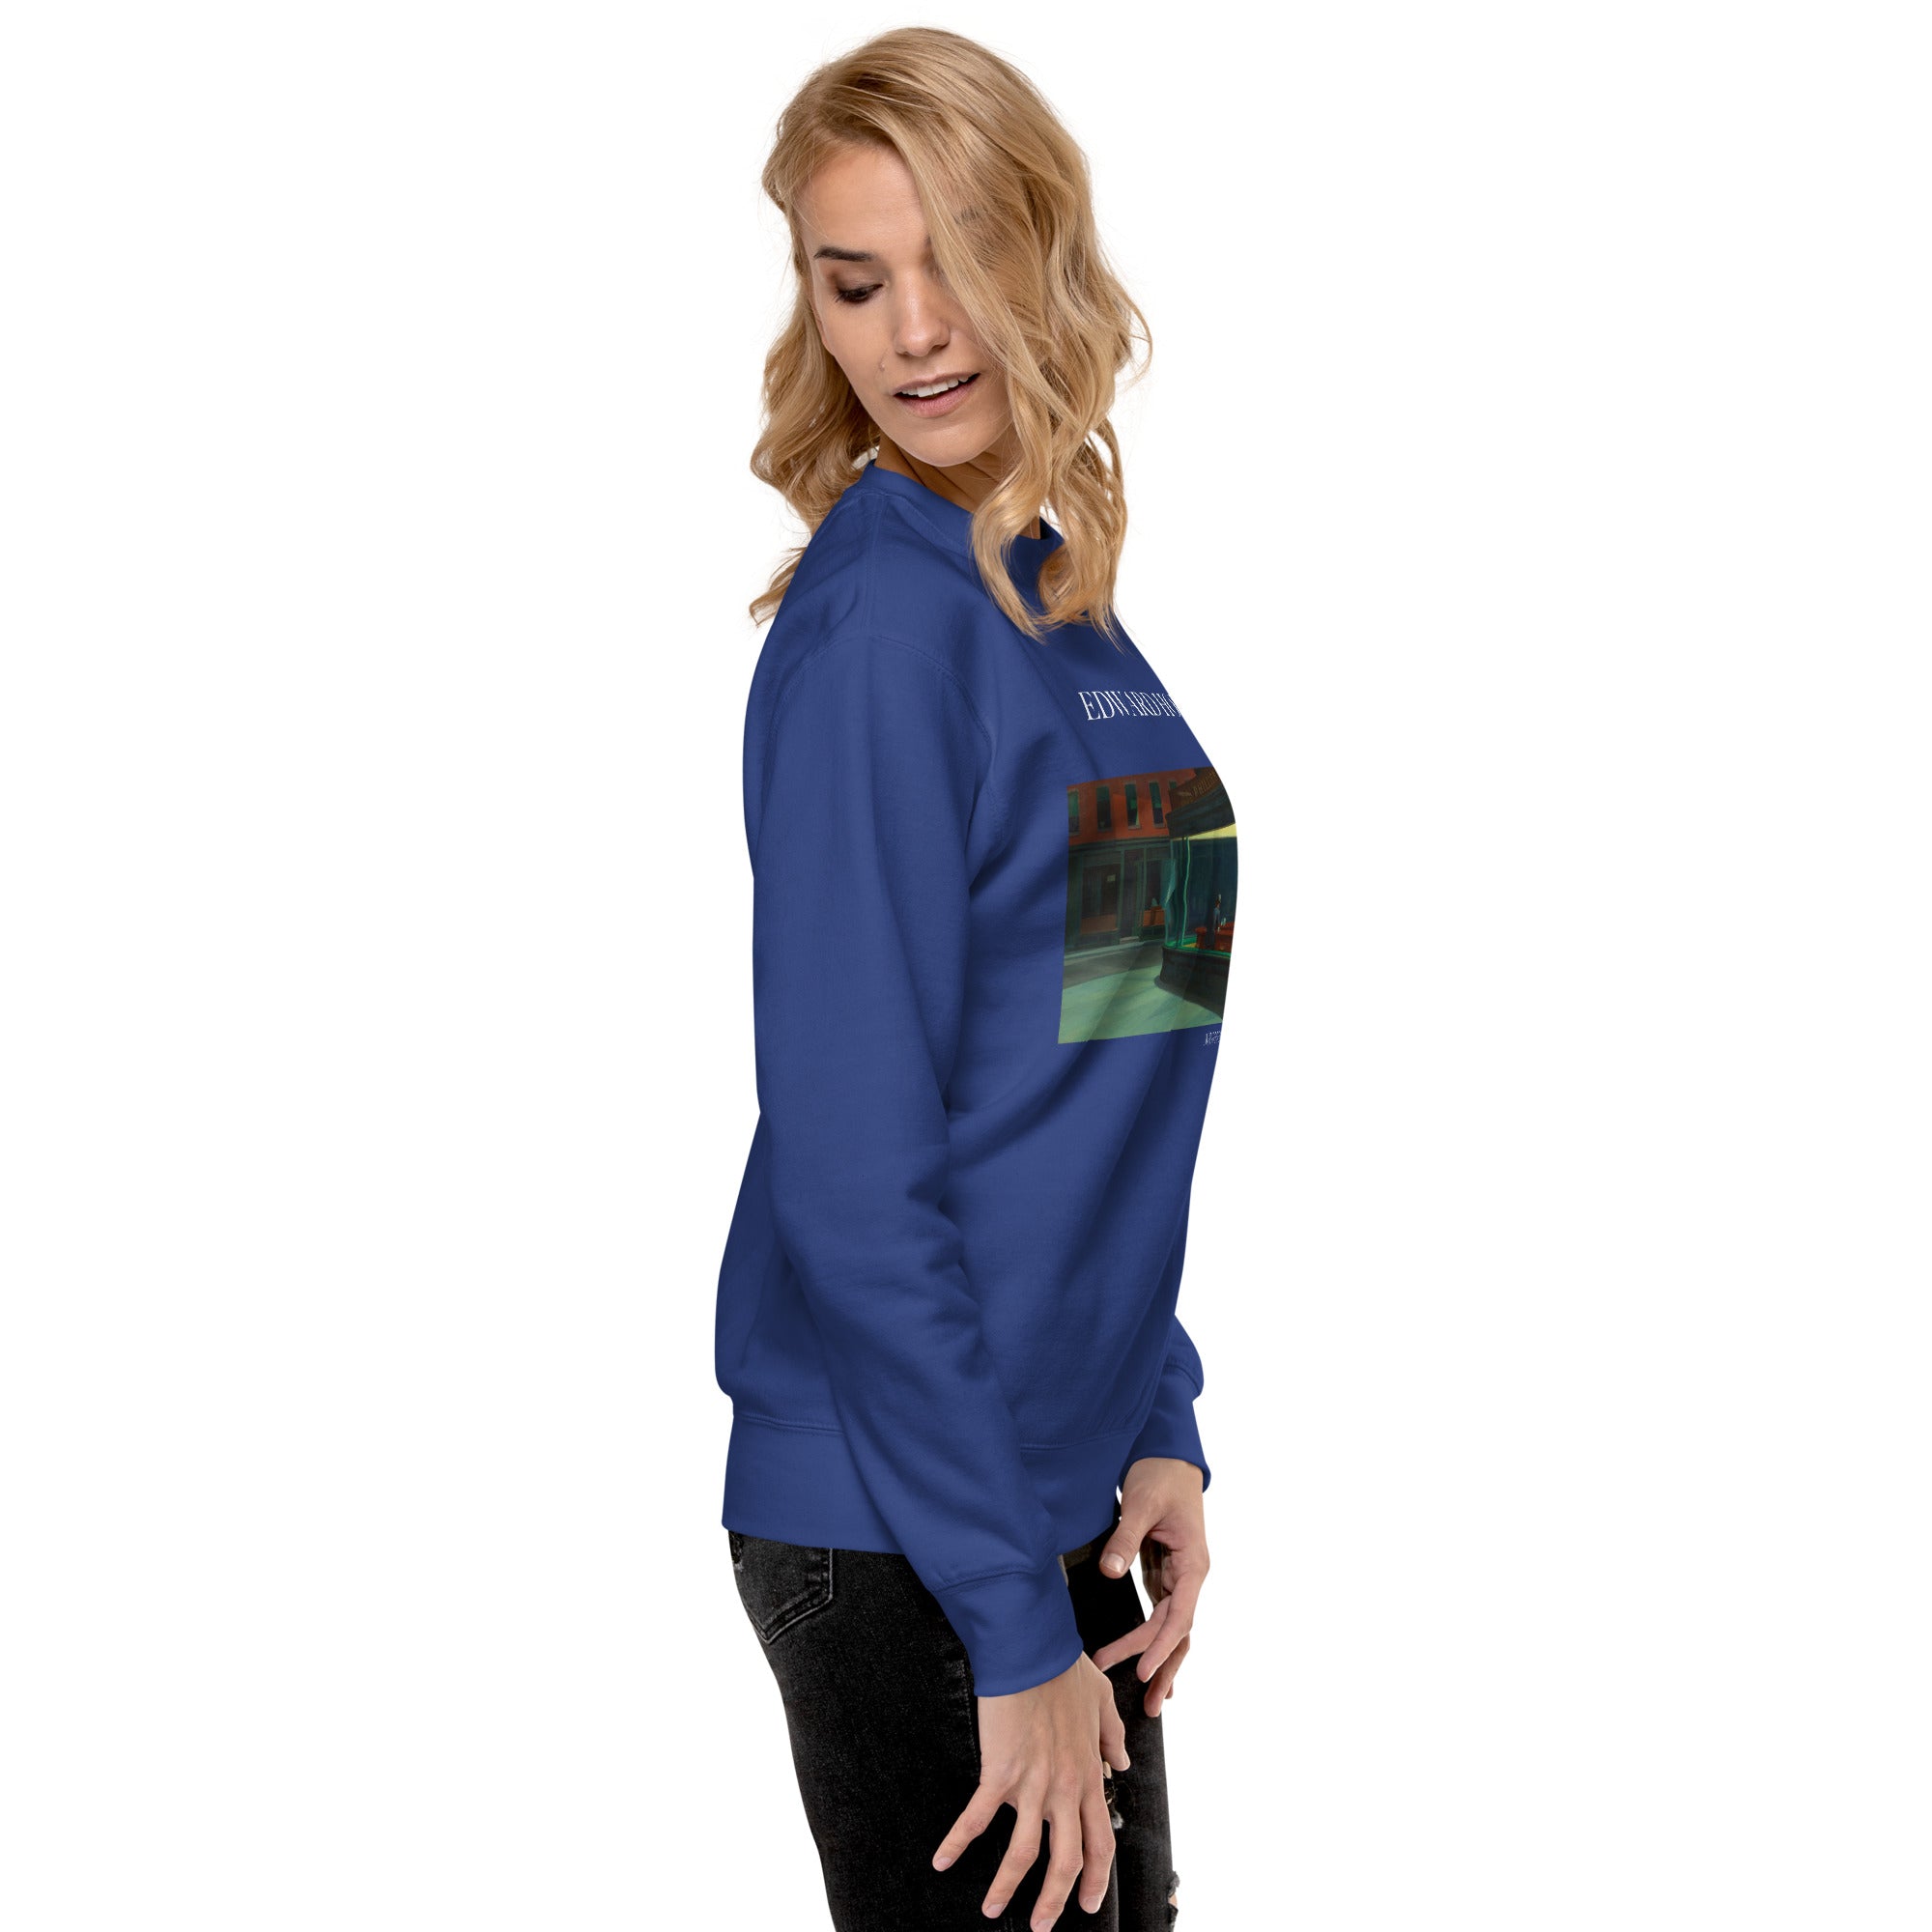 Sweatshirt mit berühmtem Gemälde „Nighthawks“ von Edward Hopper | Premium-Sweatshirt für Unisex